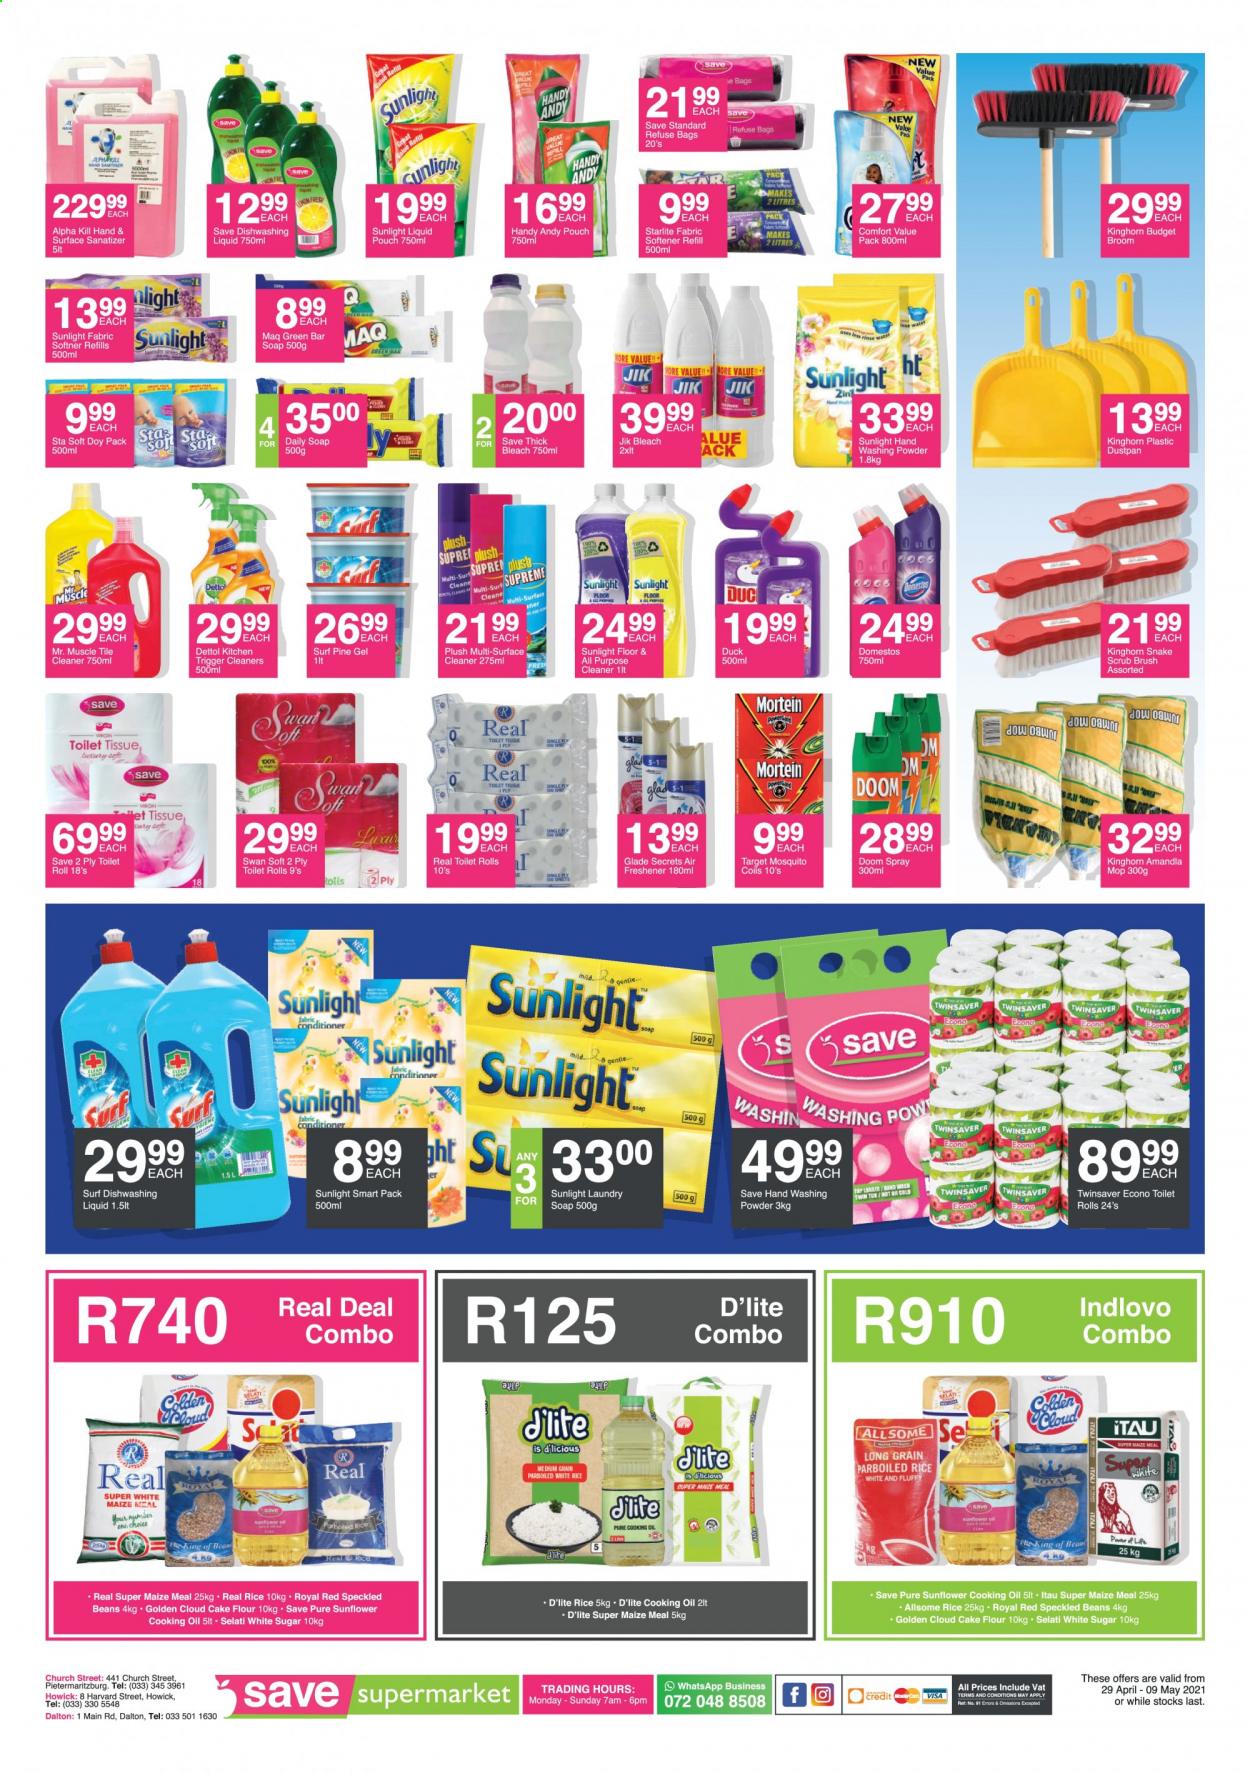 Save supermarket specials - 04.29.2021 - 05.09.2021. 